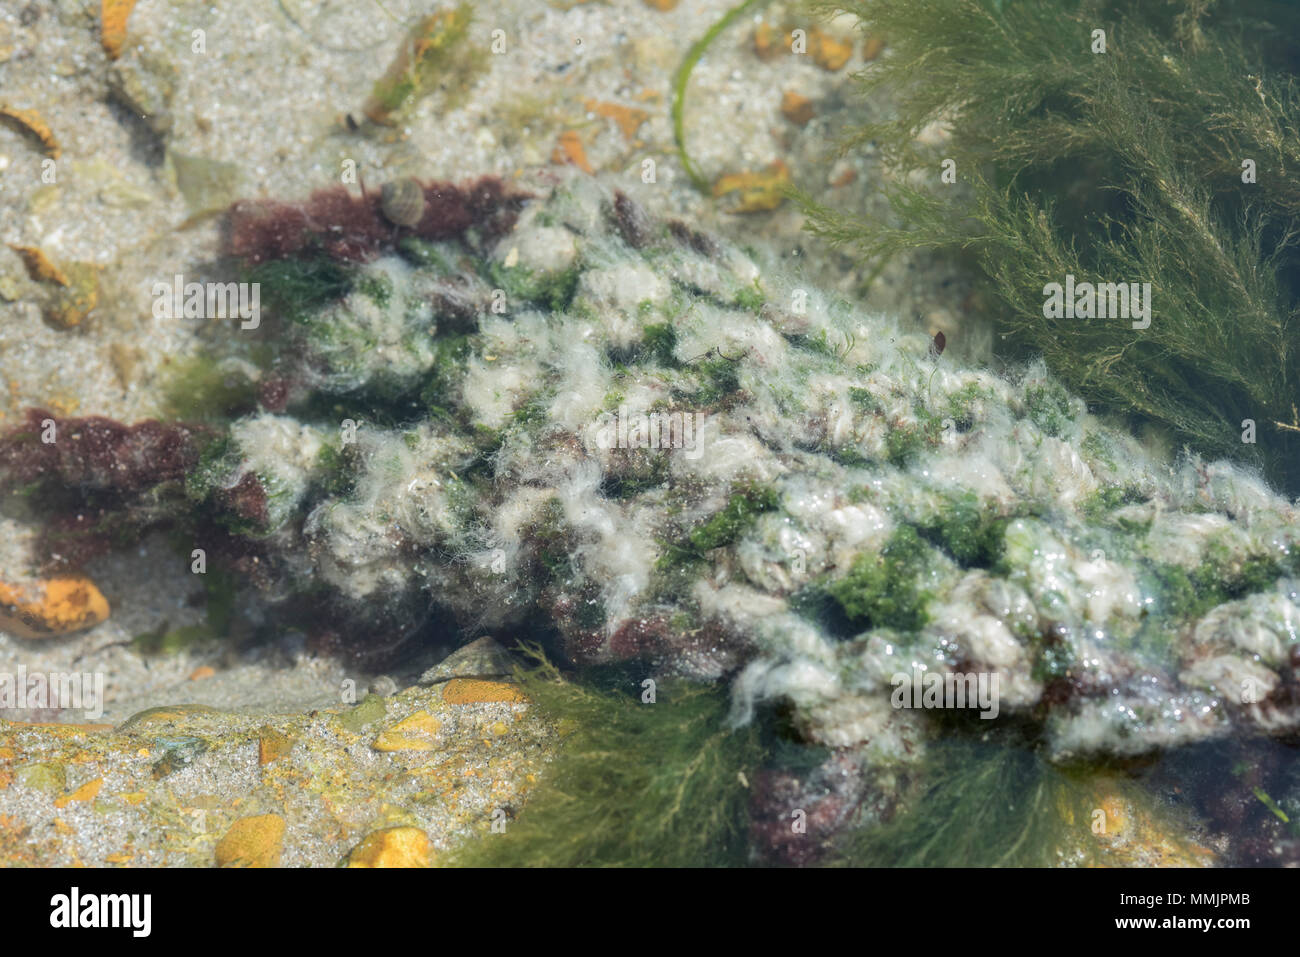 Un alga roja cubiertas en crecimiento blanco Foto de stock